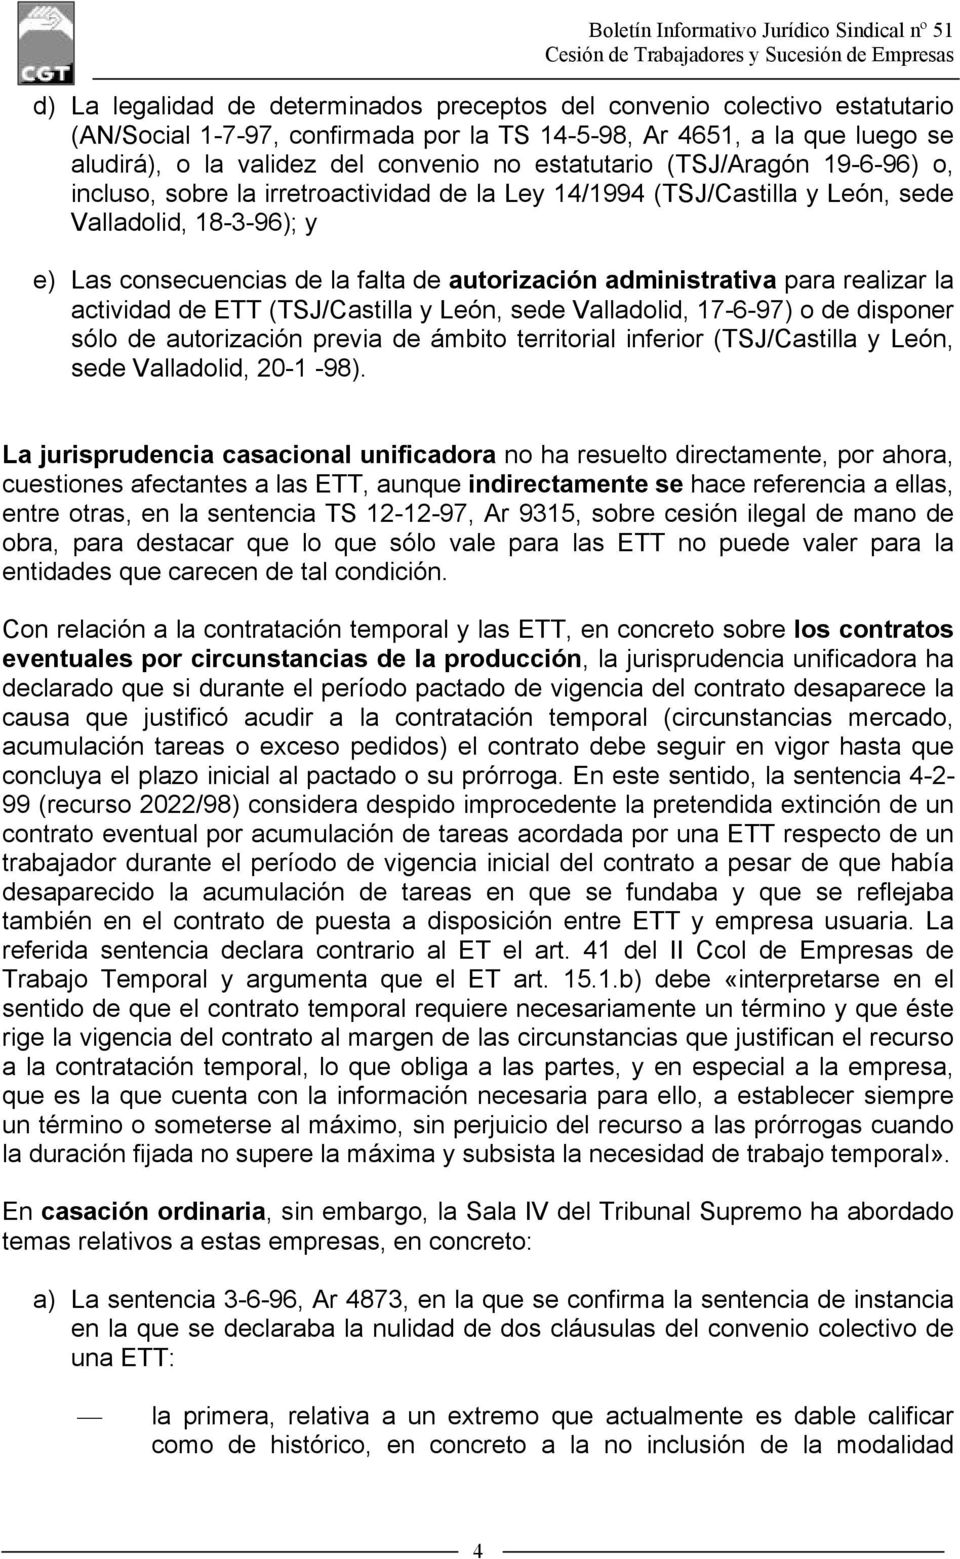 administrativa para realizar la actividad de ETT (TSJ/Castilla y León, sede Valladolid, 17-6-97) o de disponer sólo de autorización previa de ámbito territorial inferior (TSJ/Castilla y León, sede